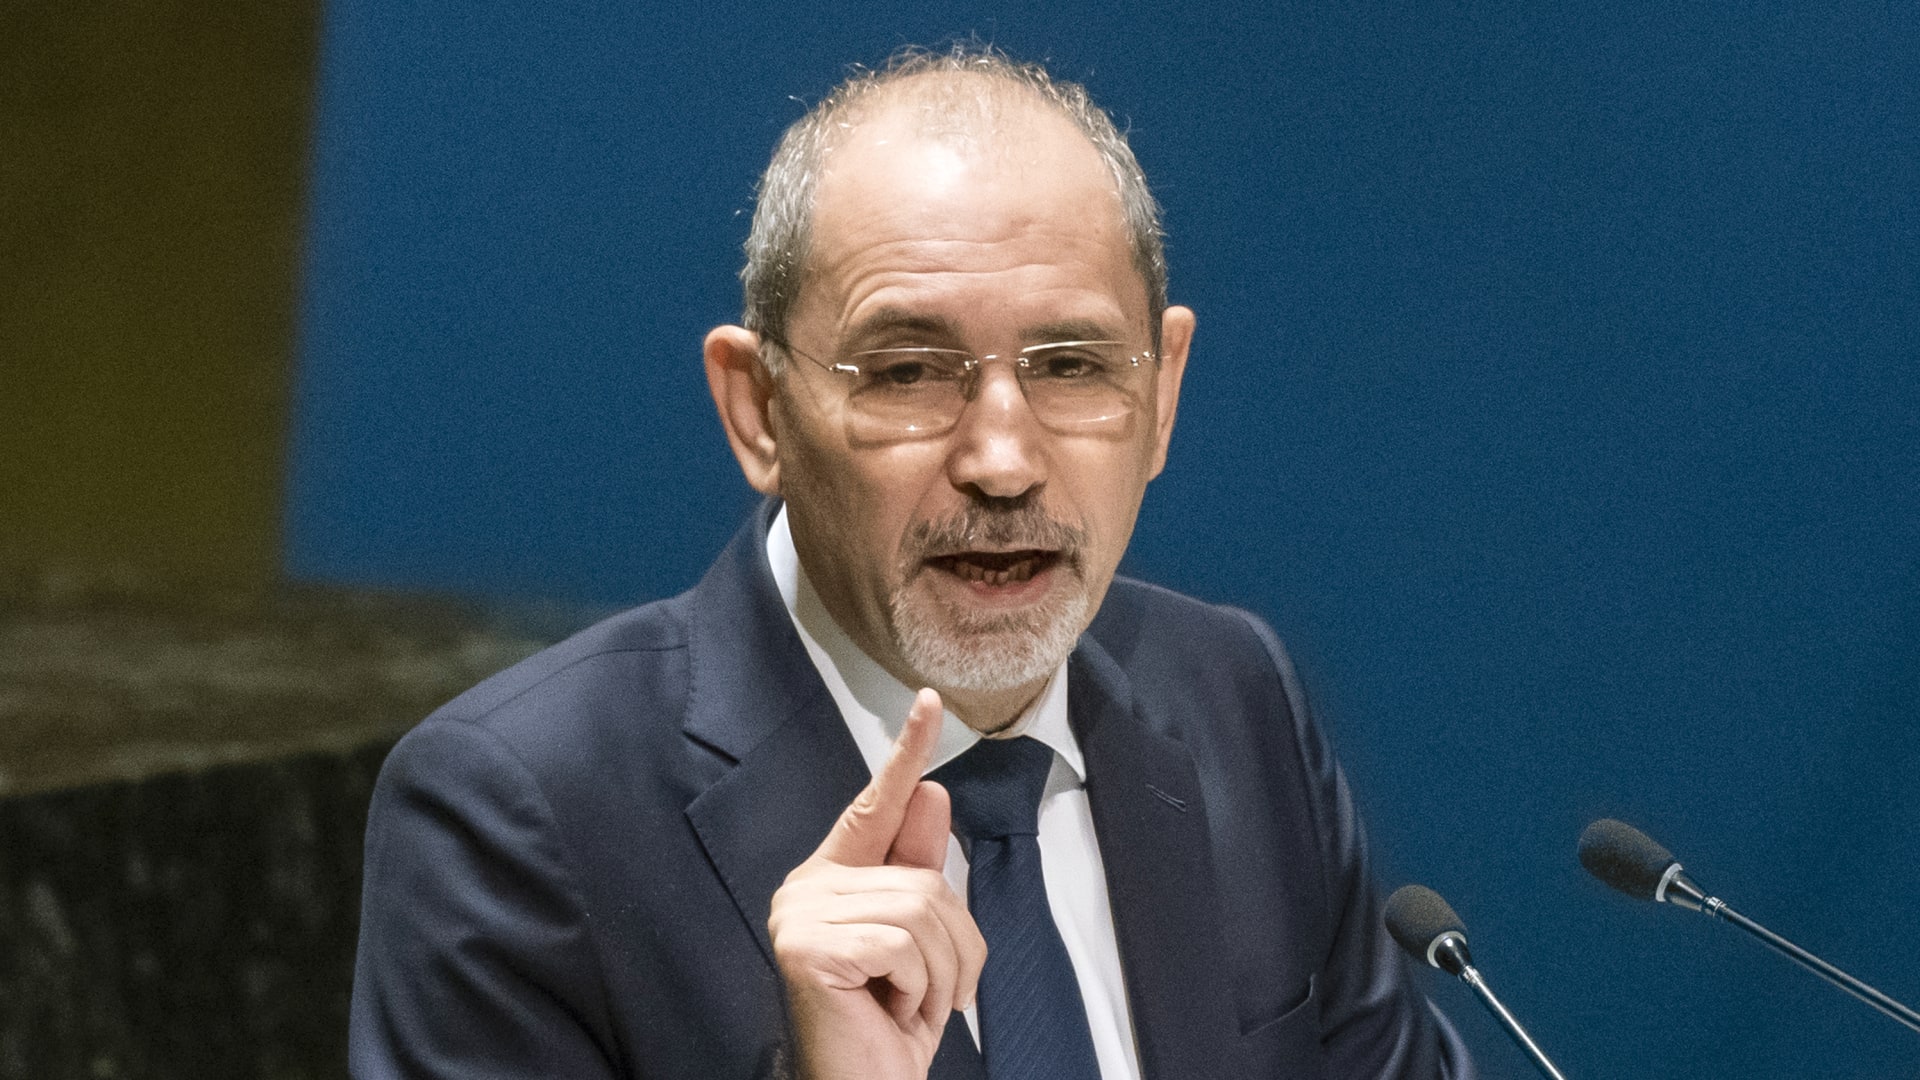 "تصفيق نادر" لما قاله وزير خارجية الأردن بالجلسة الطارئة للأمم المتحدة بشأن غزة وإسرائيل